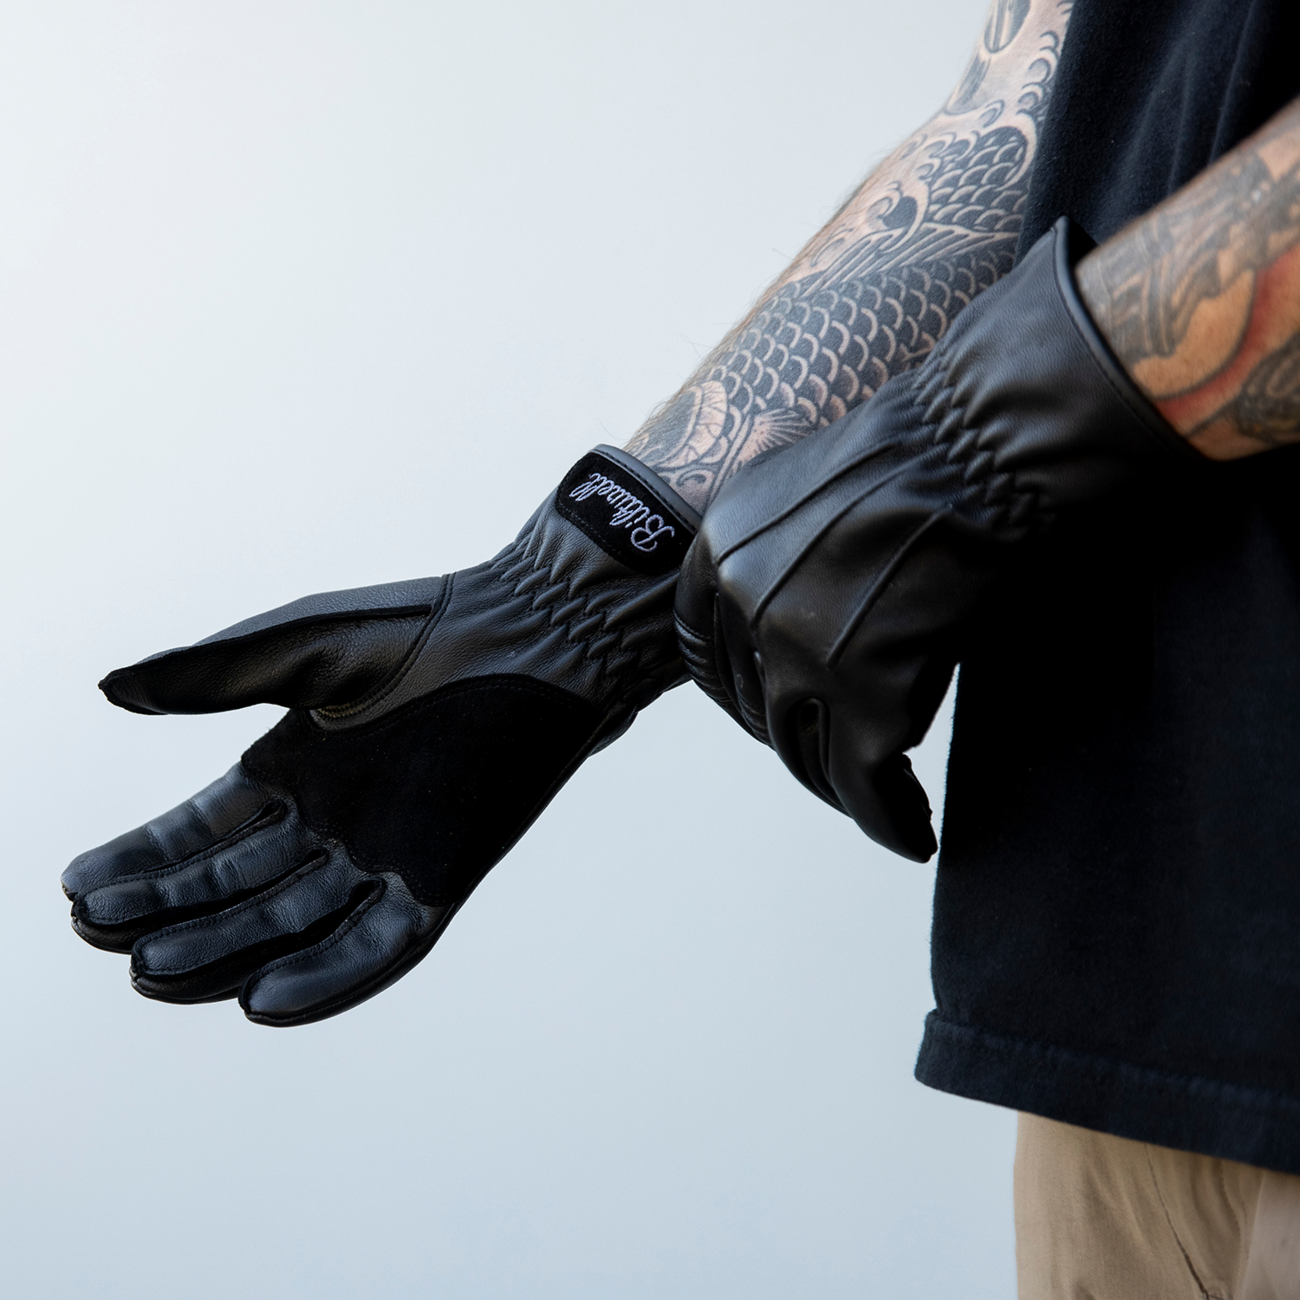 BILTWELL Work 2.0 Gloves - Black - XL 1510-0101-005